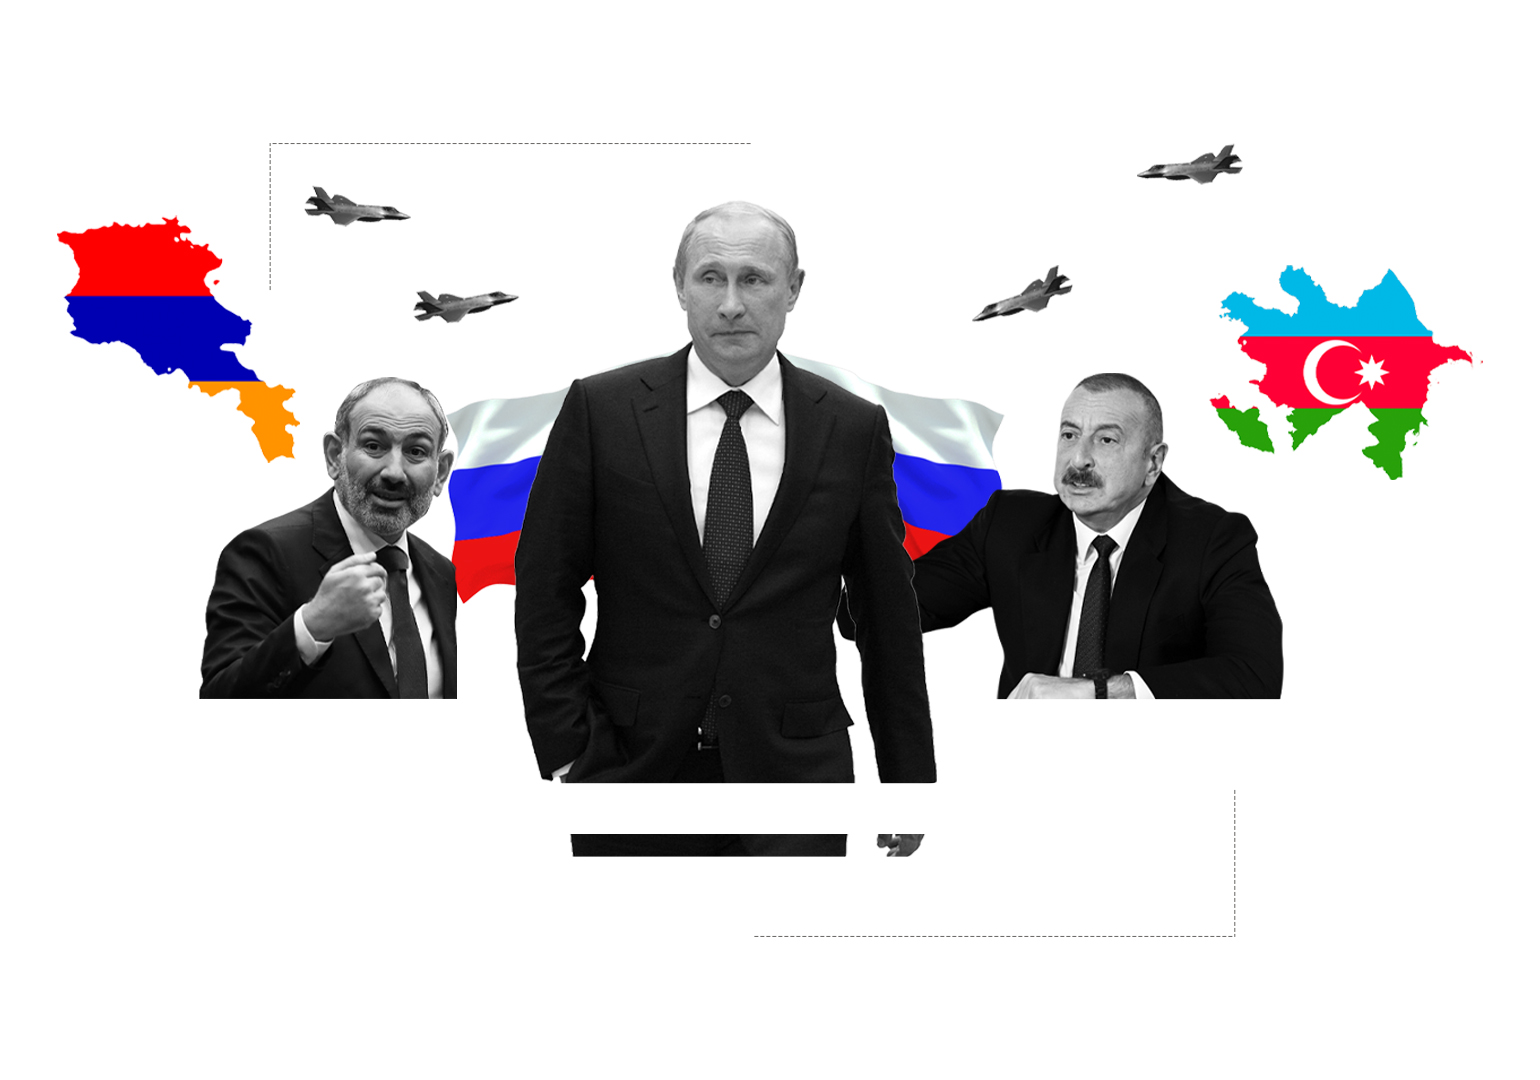 რუსეთი სომხეთს არ ეხმარება – შესაძლებლობა ვაშინგტონისთვის